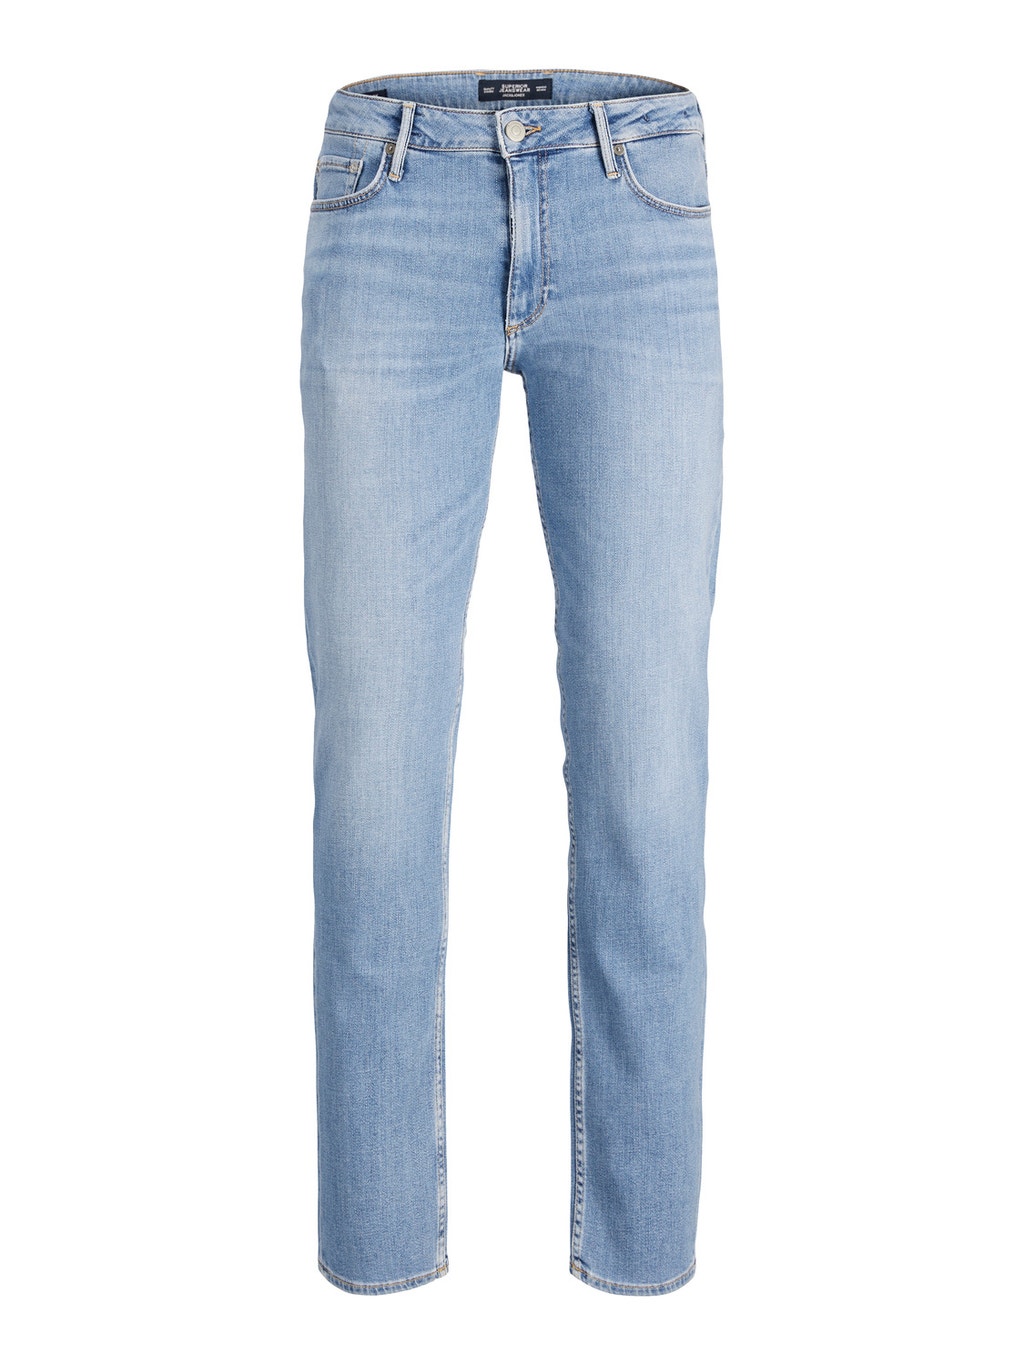 jackjones.com | Clark evan CJ 331 regular fit jeans